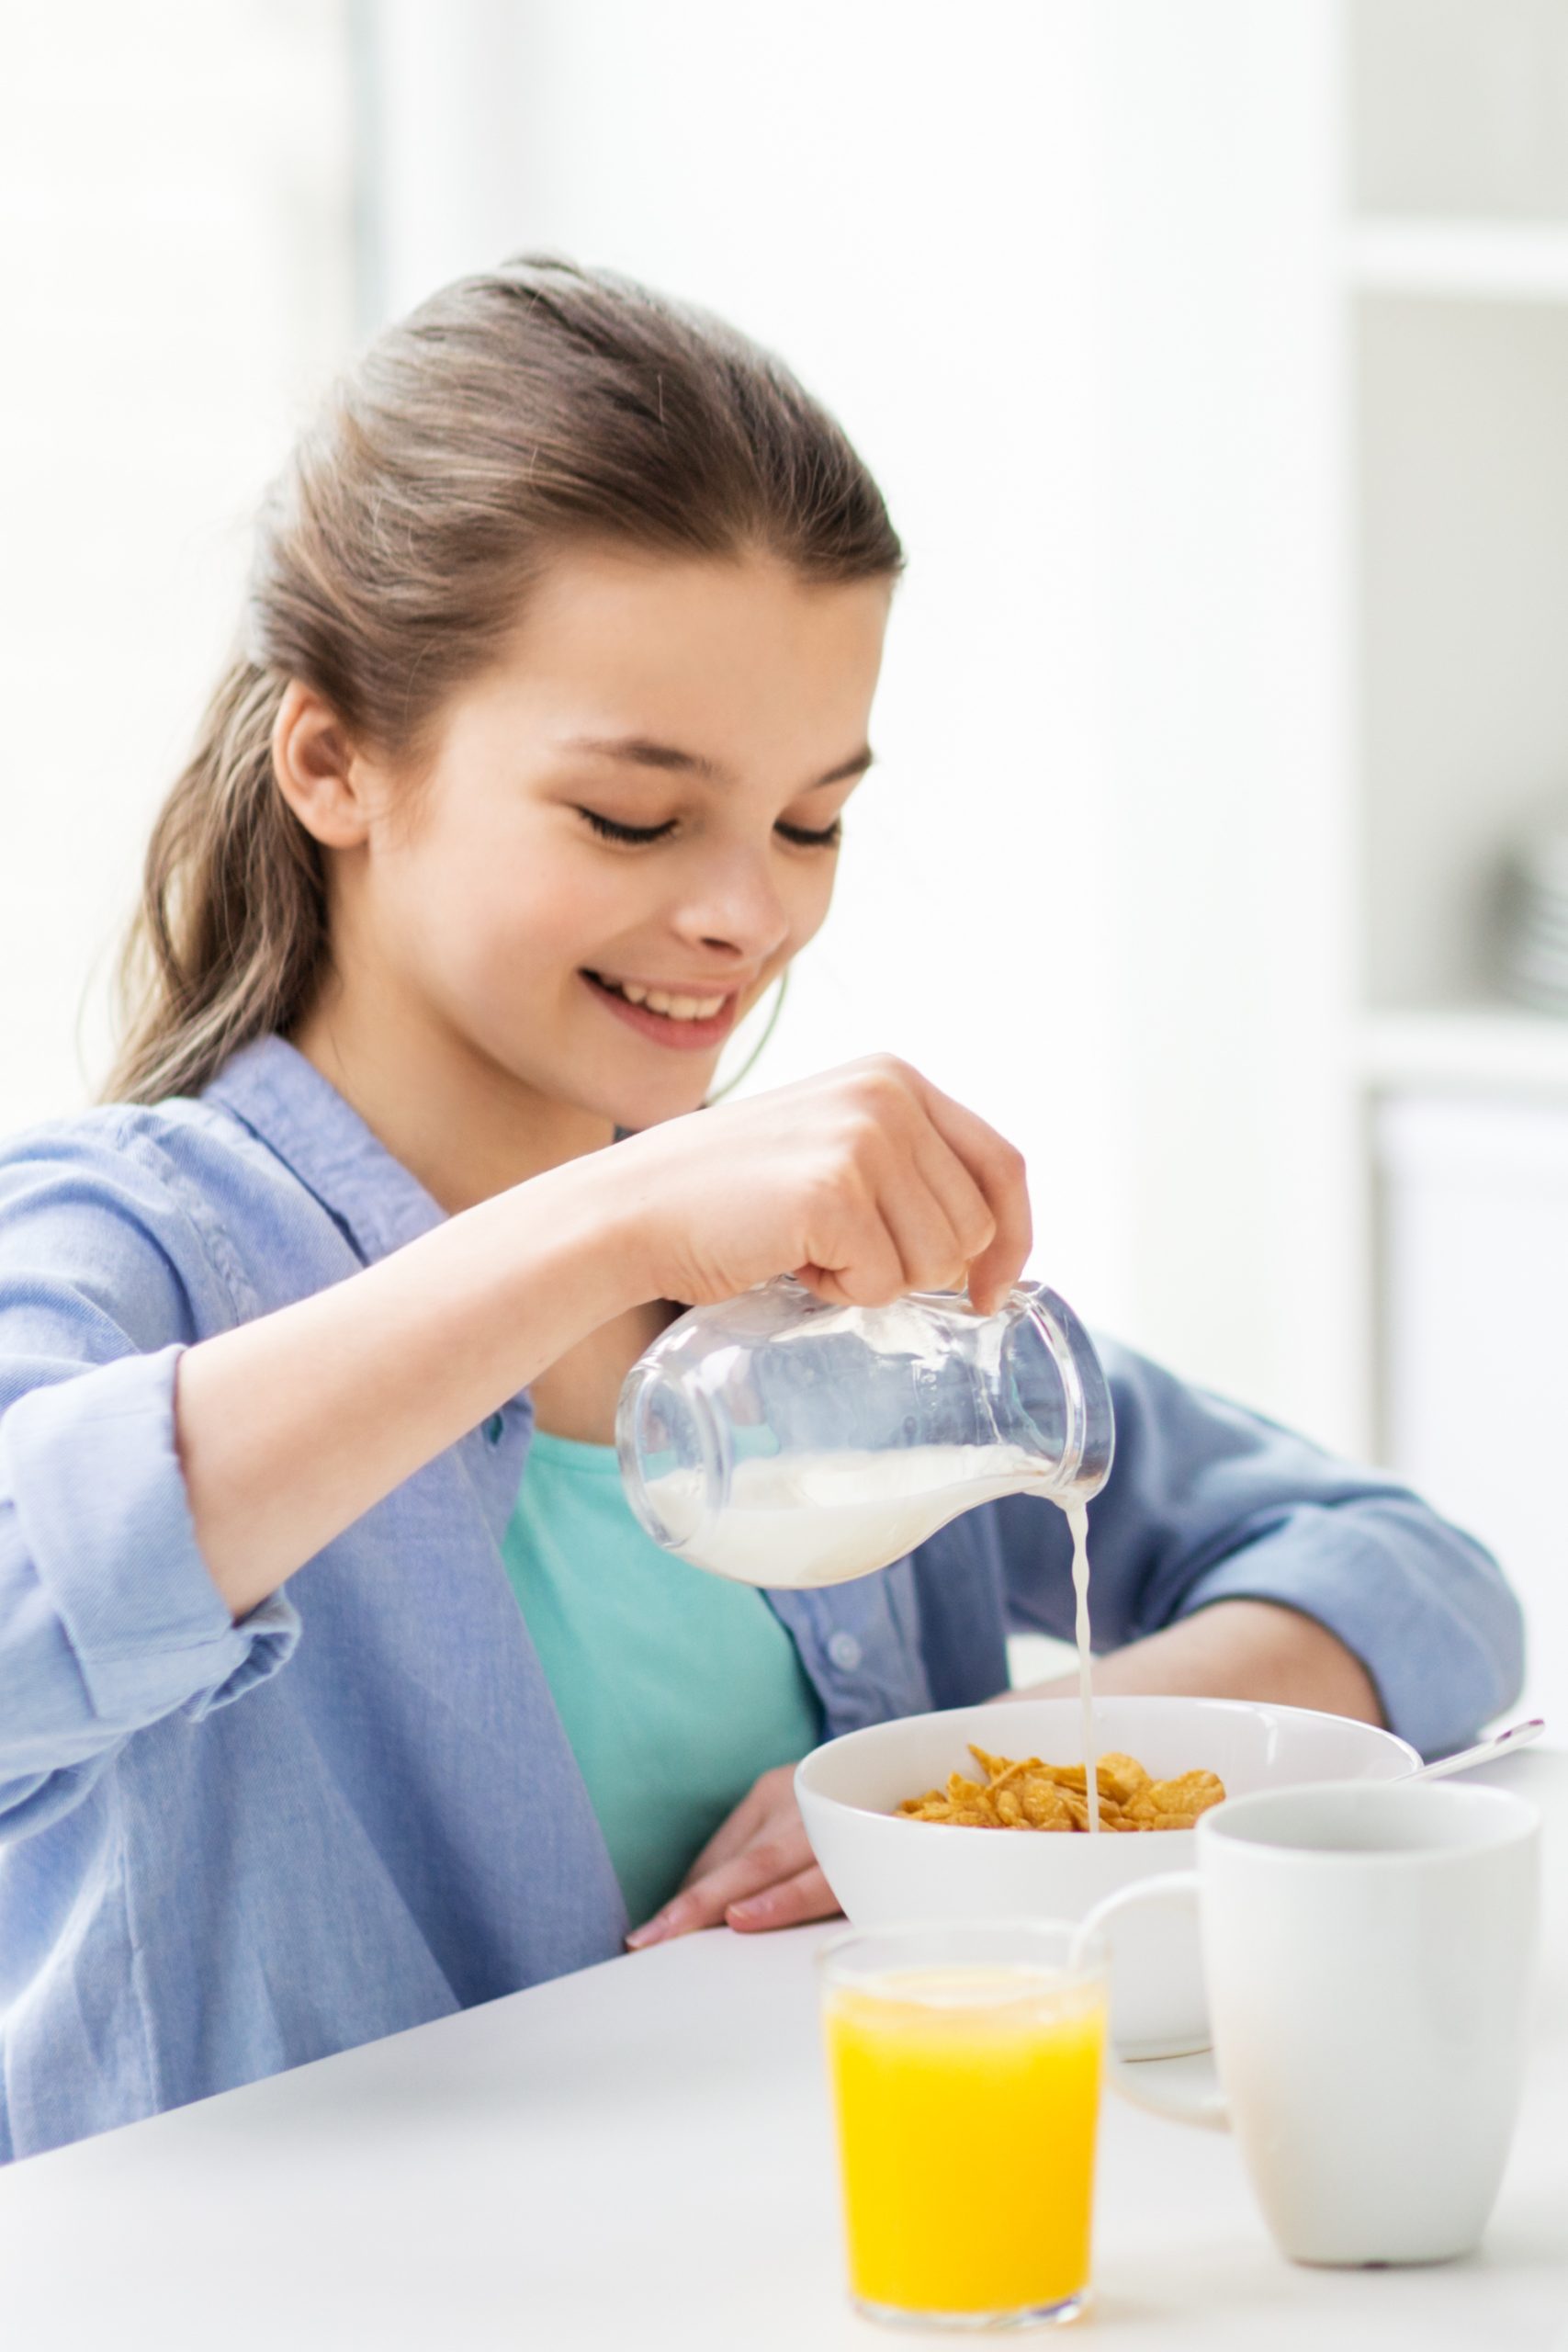 Importance of Breakfast for Kids